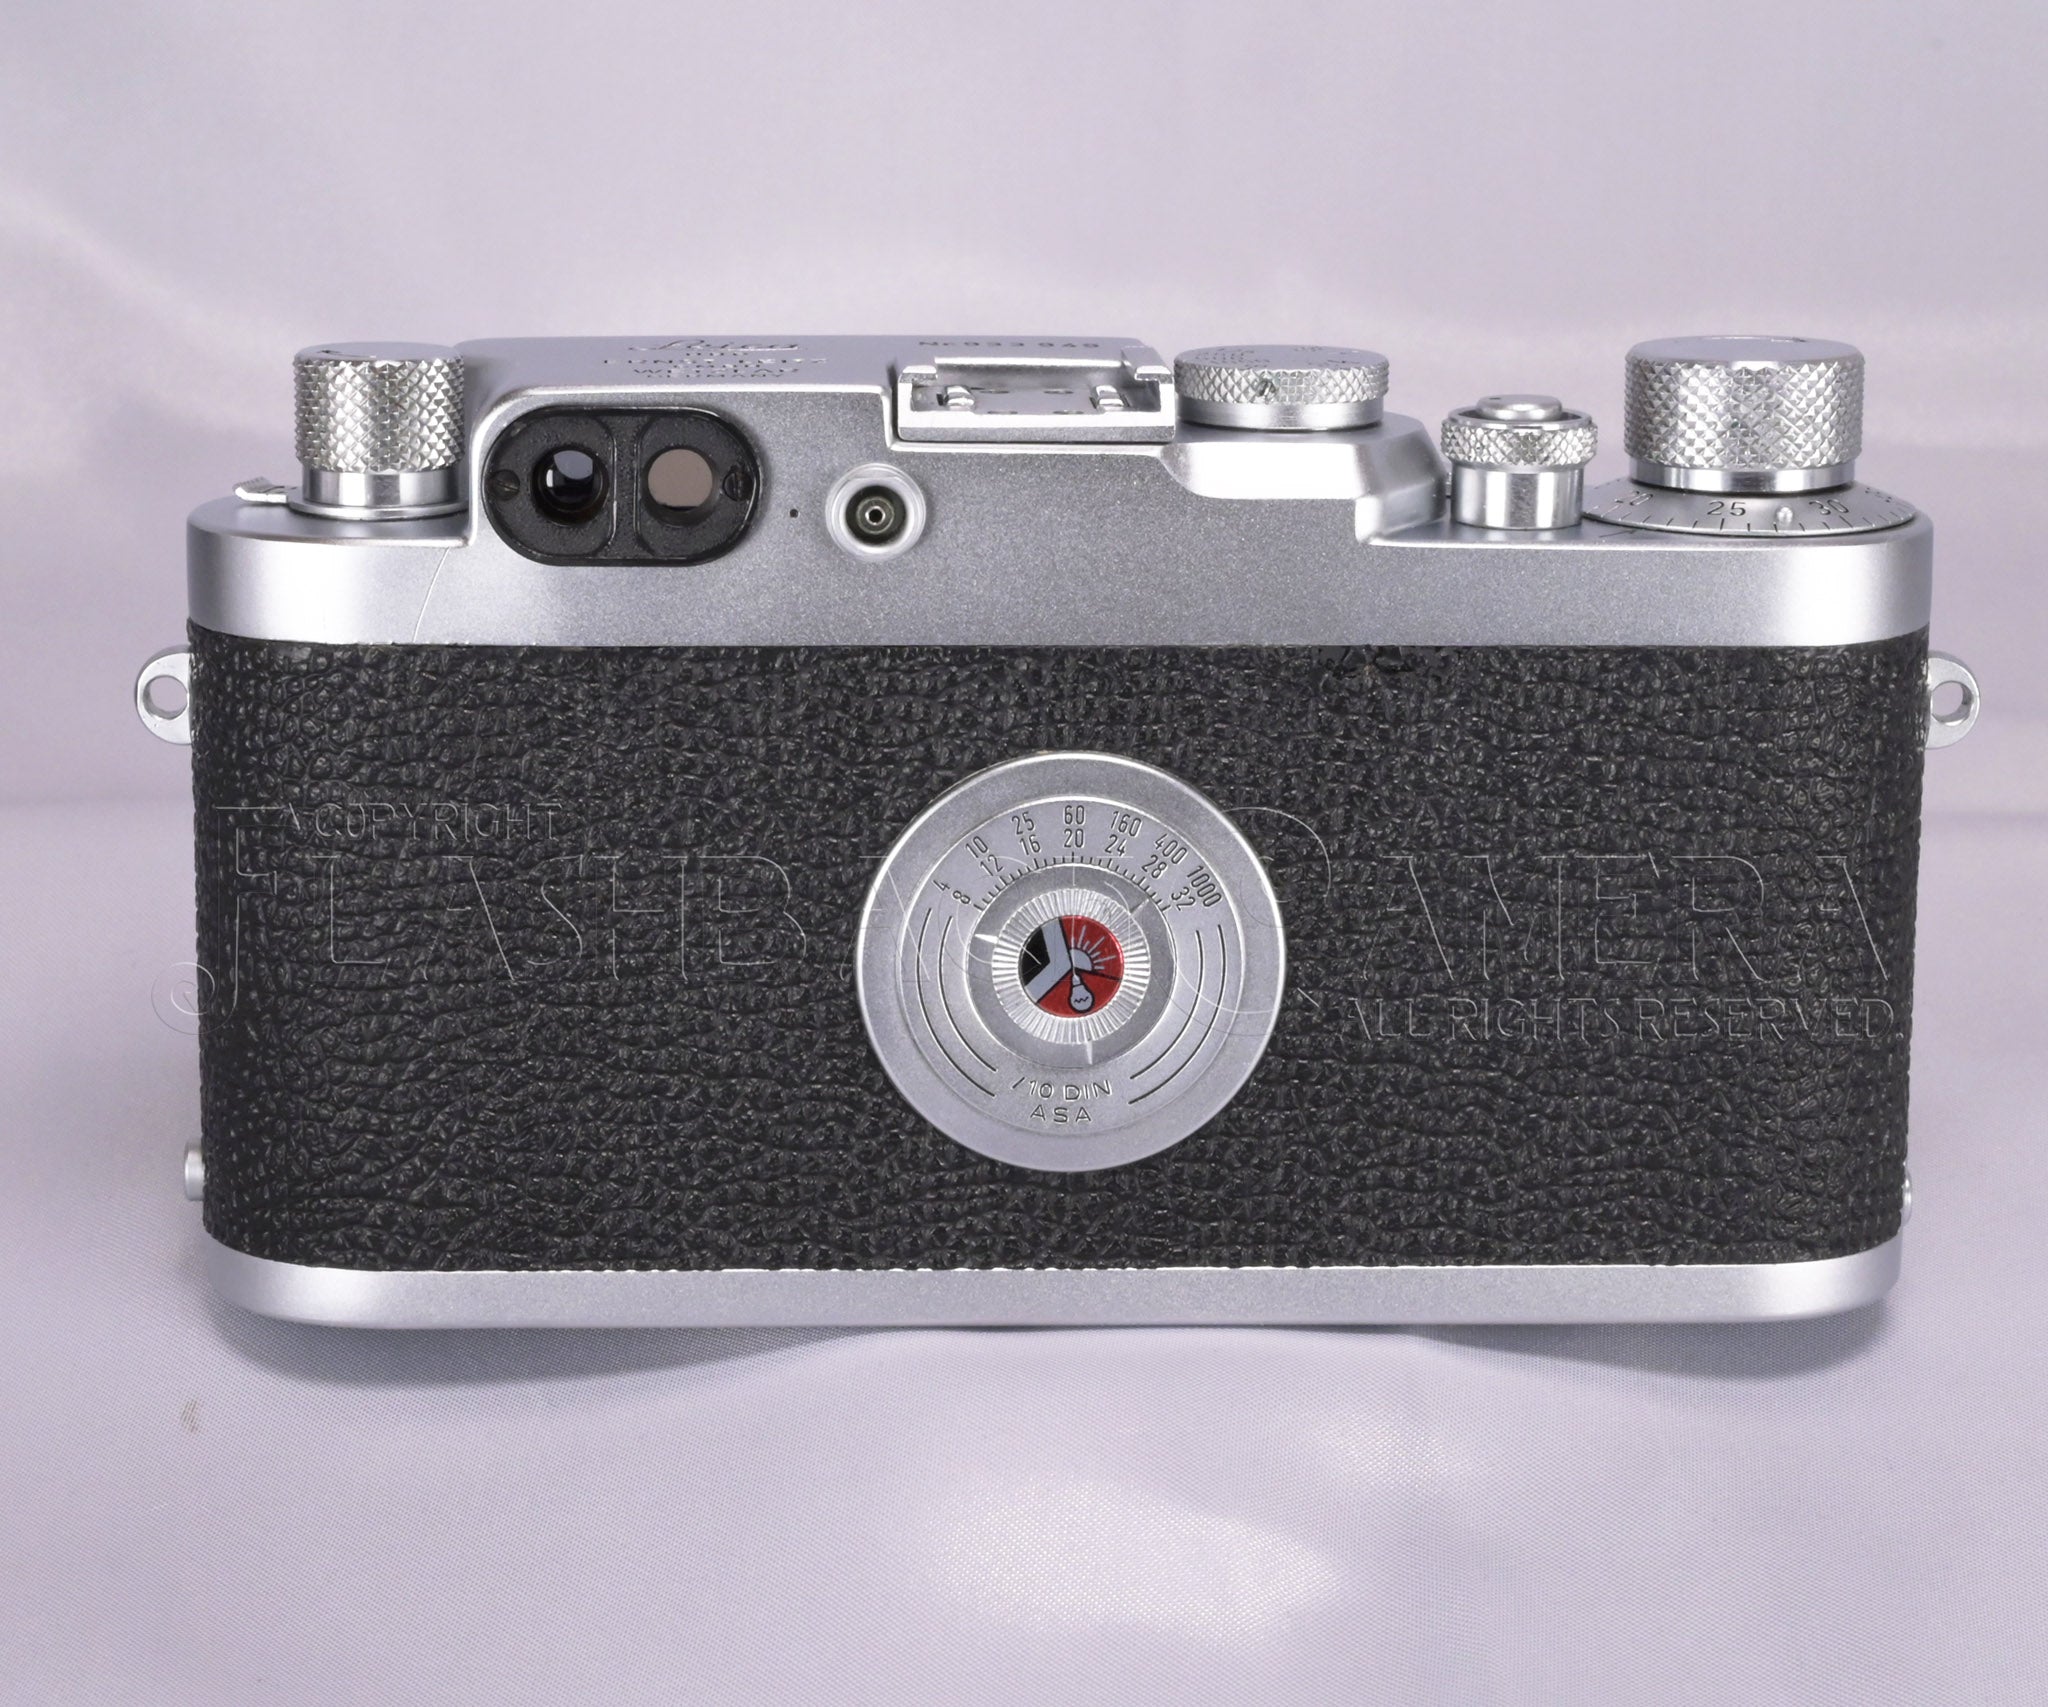 1957年製造希少品 バルナック Leica IIIg